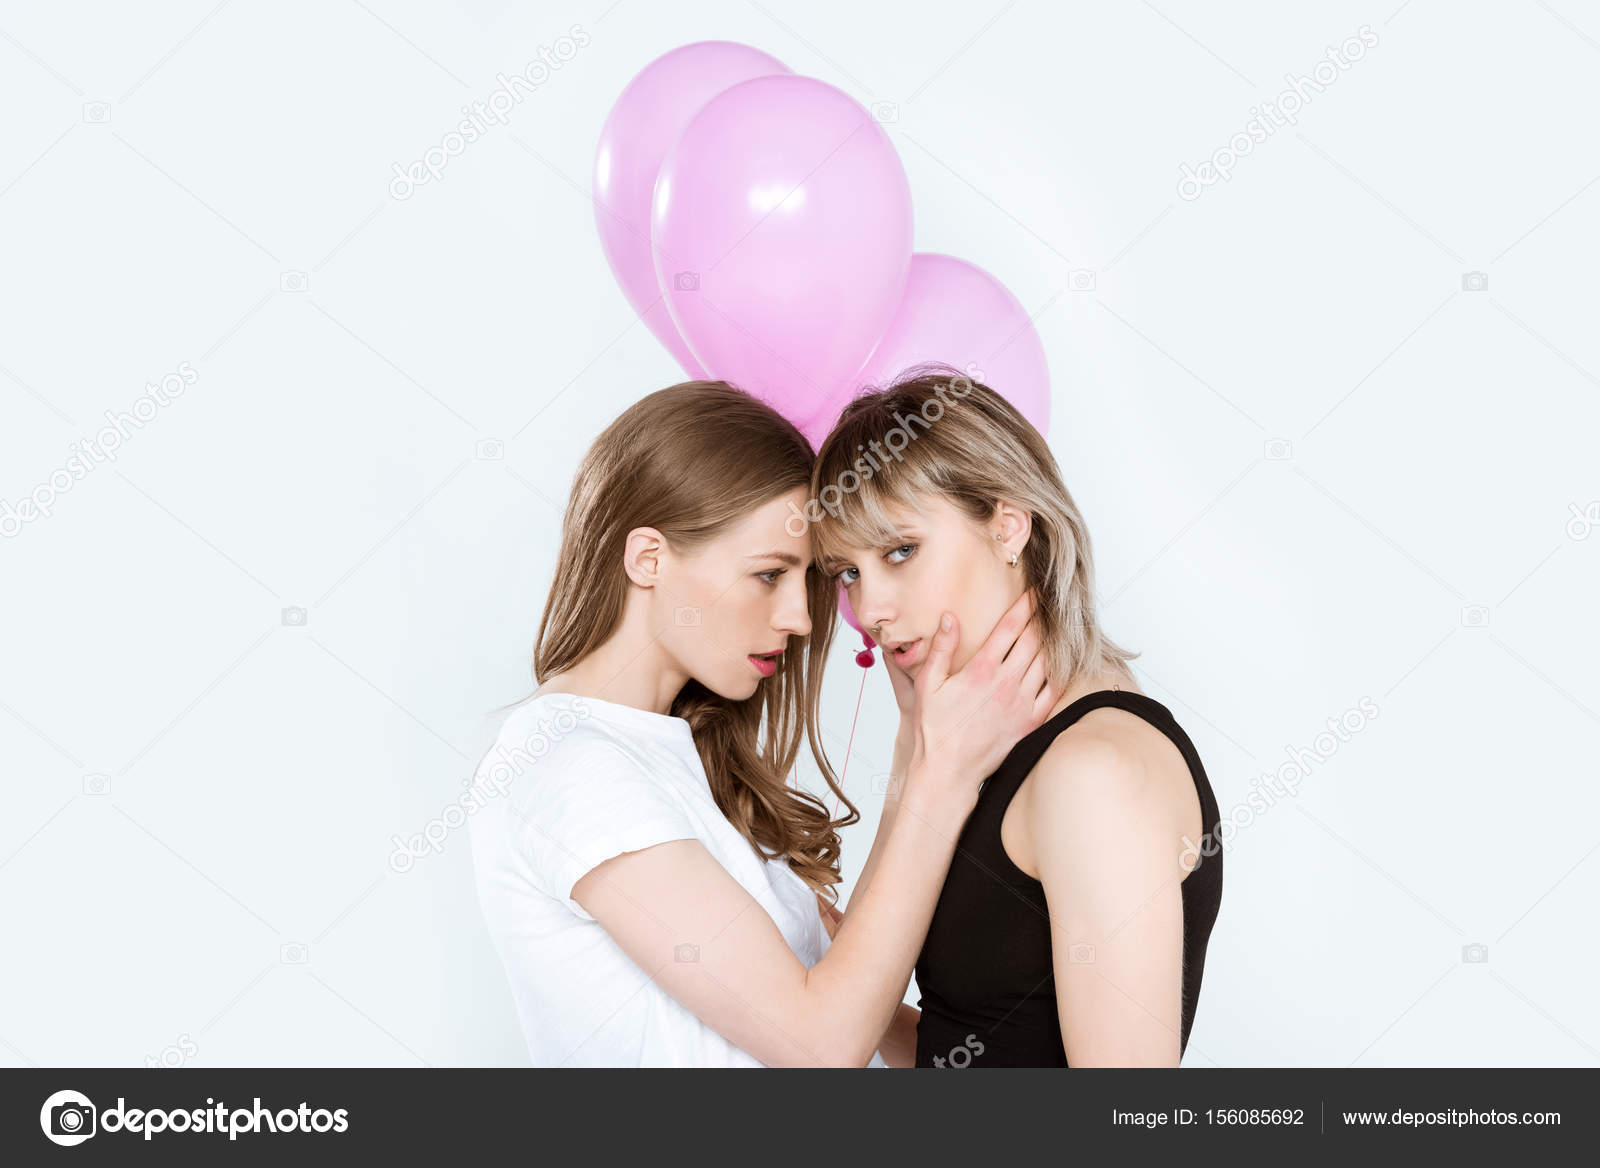 Lesbisches Paar Mit Luftballons Stockfotografie Lizenzfreie Fotos © Dimabaranow 156085692